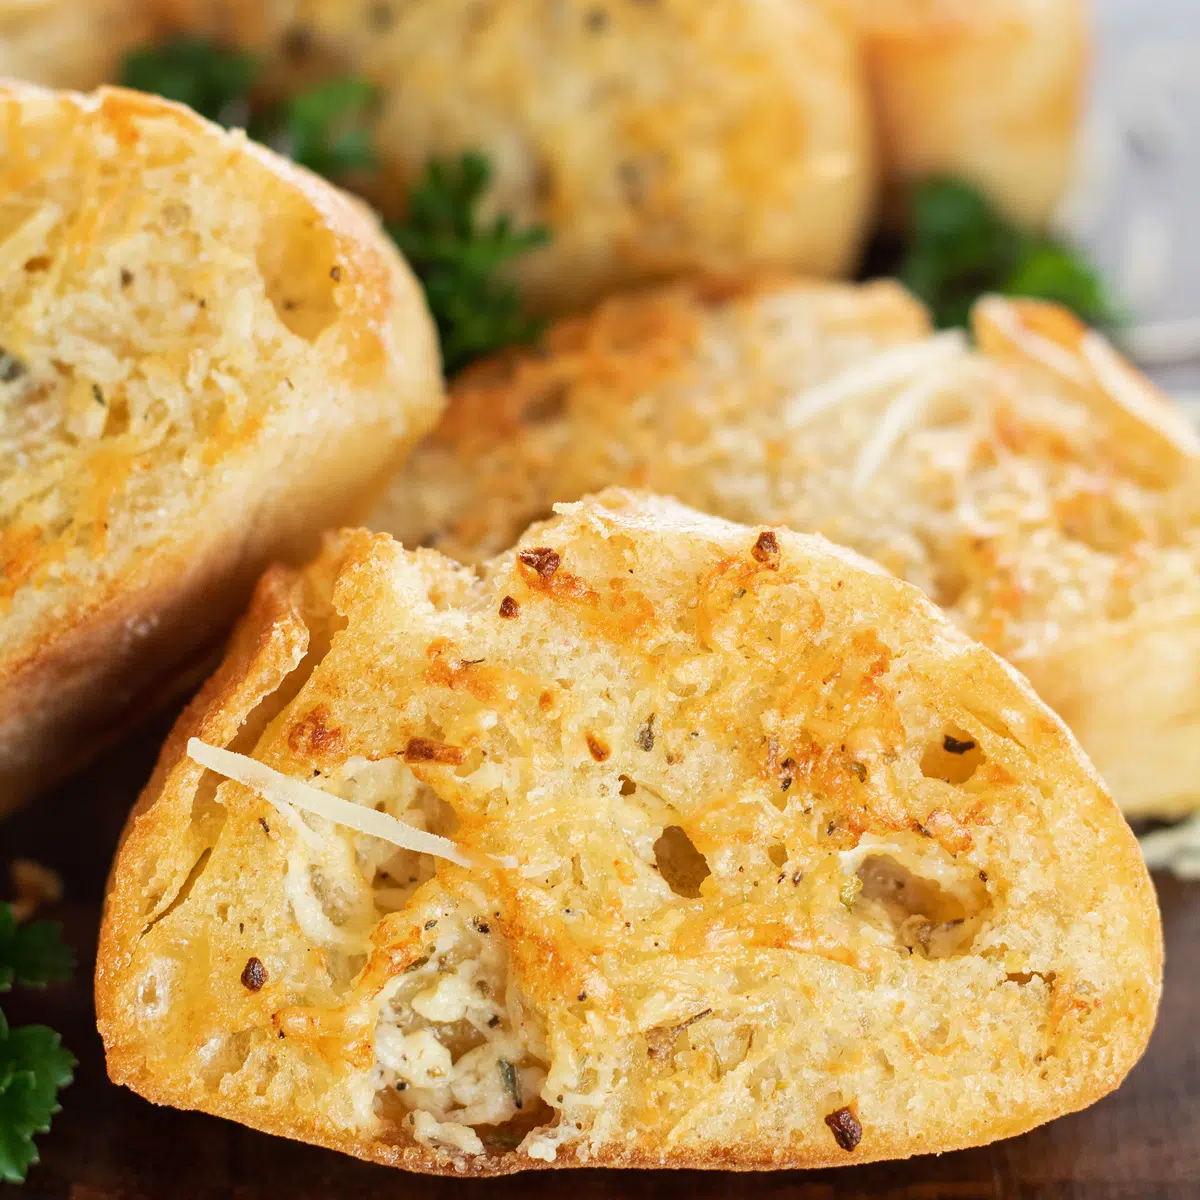 Irisan roti bawang putih yang dipanggang dengan sempurna di atas talenan kayu.